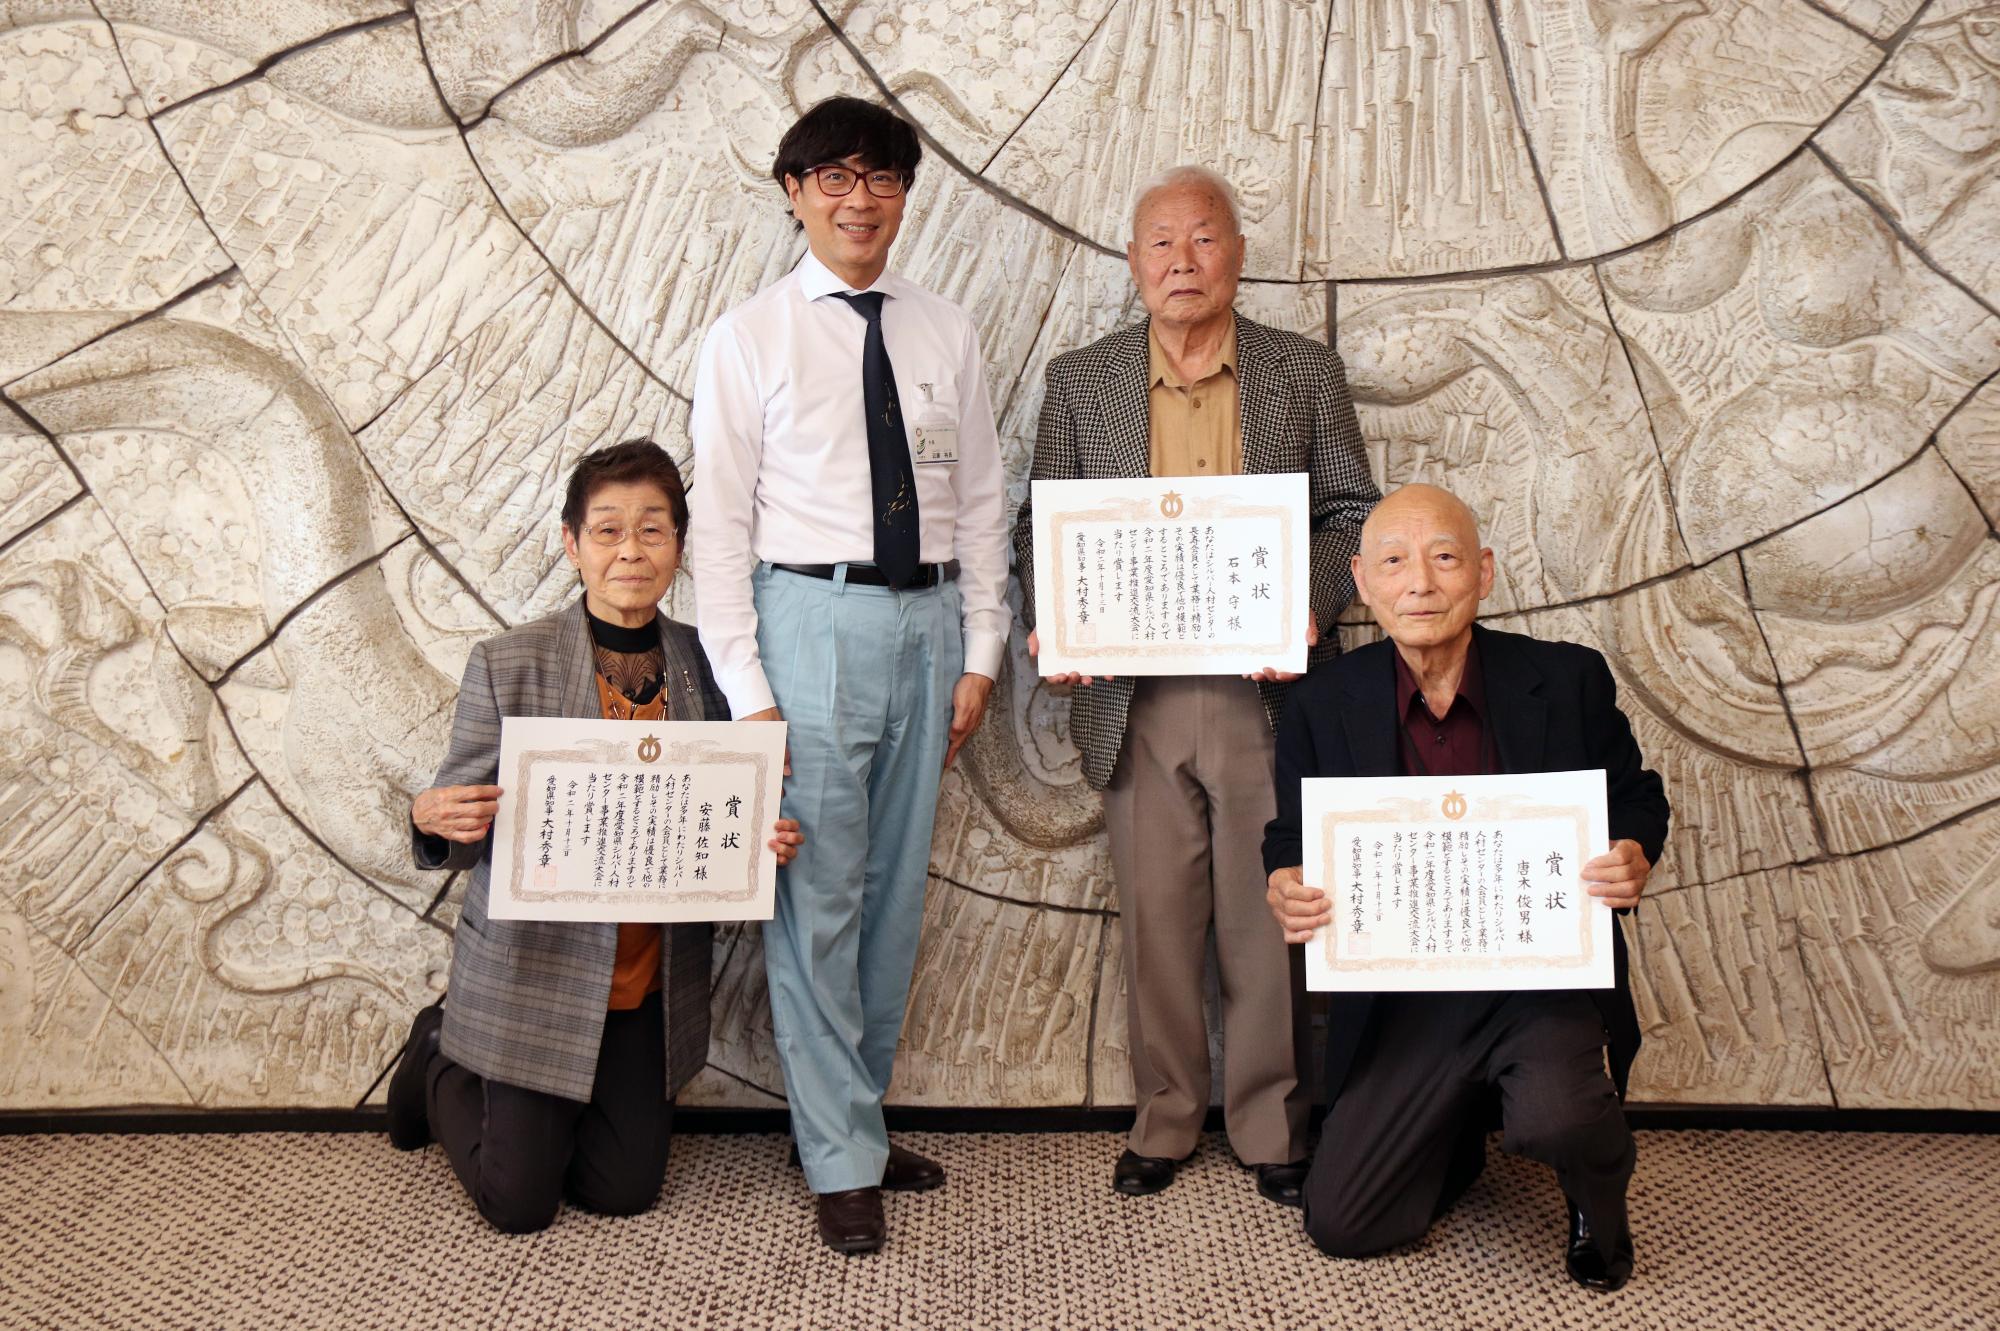 愛知県知事表彰を受賞された市シルバー人材センターの会員の皆様と写真を撮る近藤市長